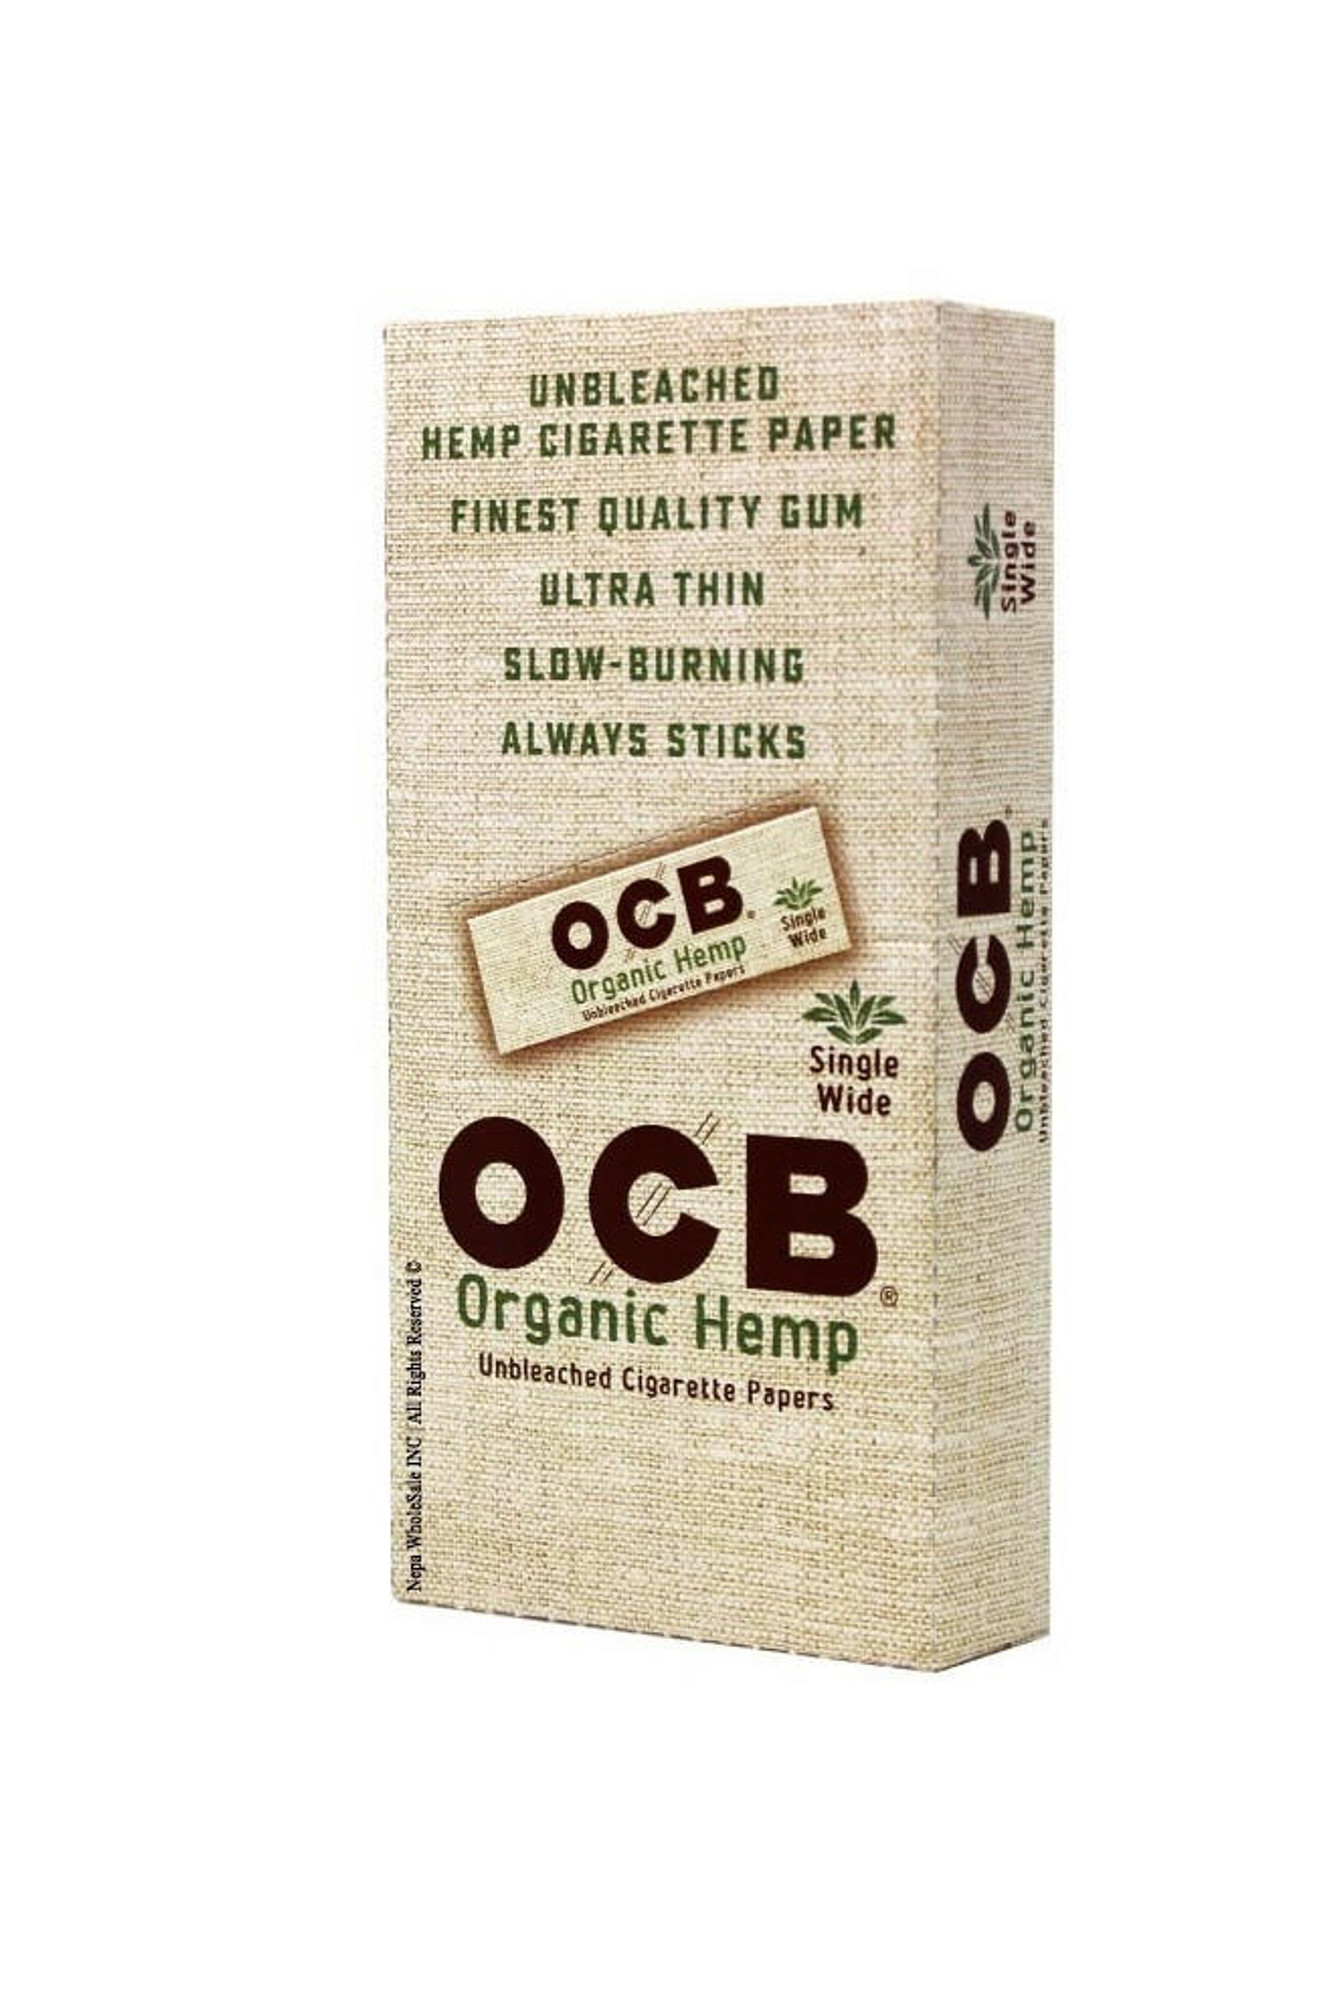 OCB Organic Hemp King Slim Size 24 ct.